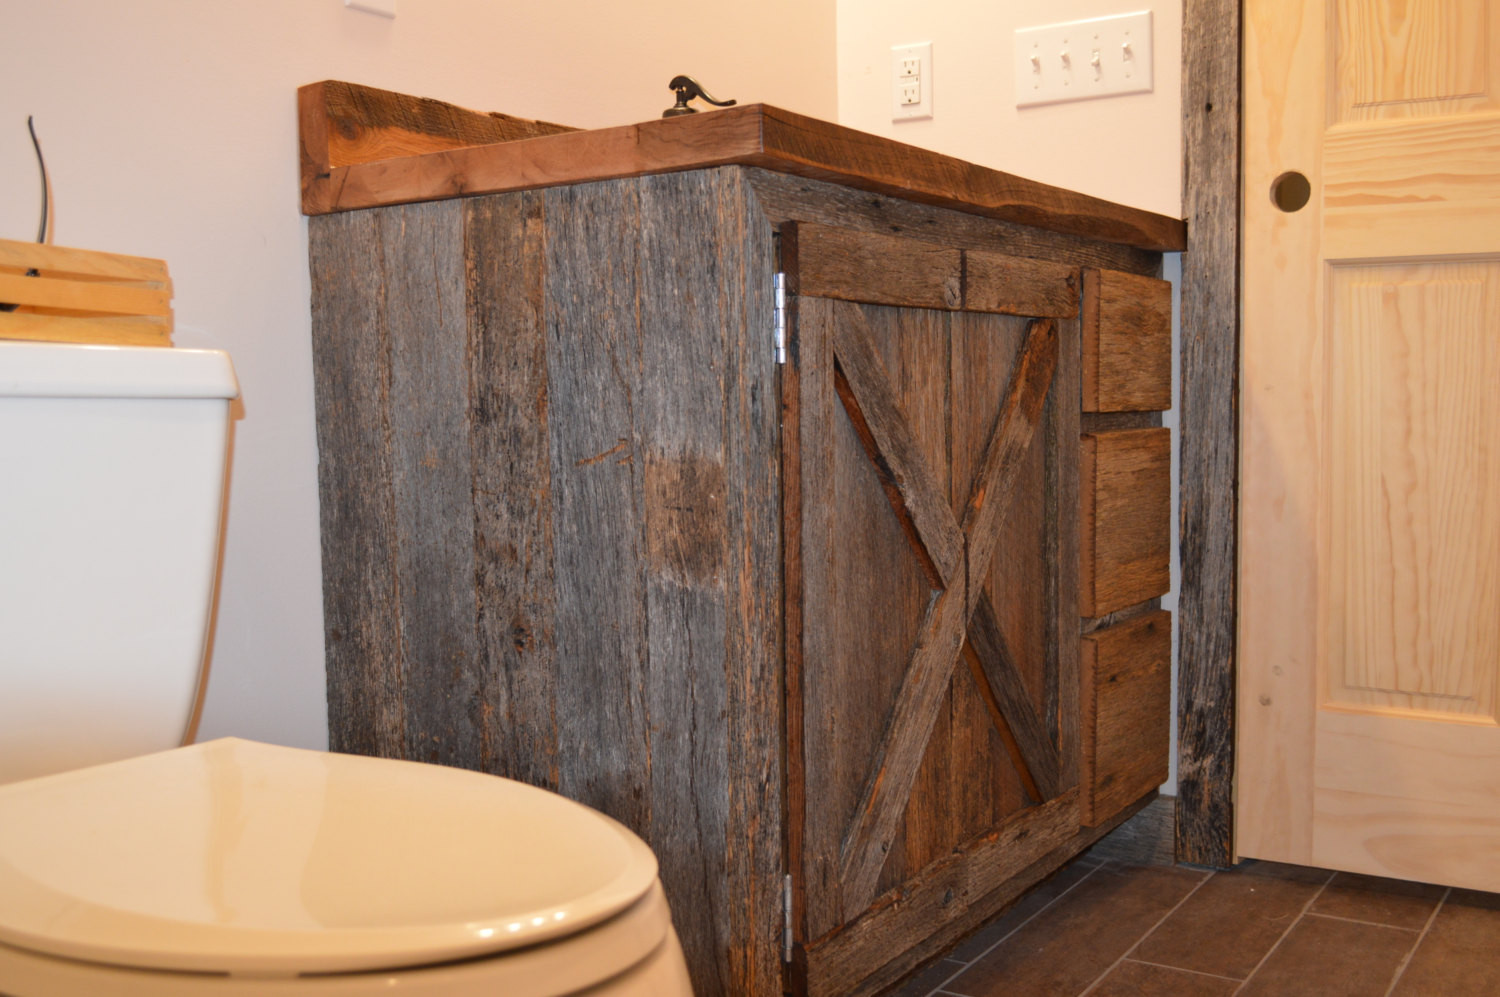 Old Barn Wood Bathroom Vanity
 Bathroom Vanity Rustic Reclaimed Barnwood by